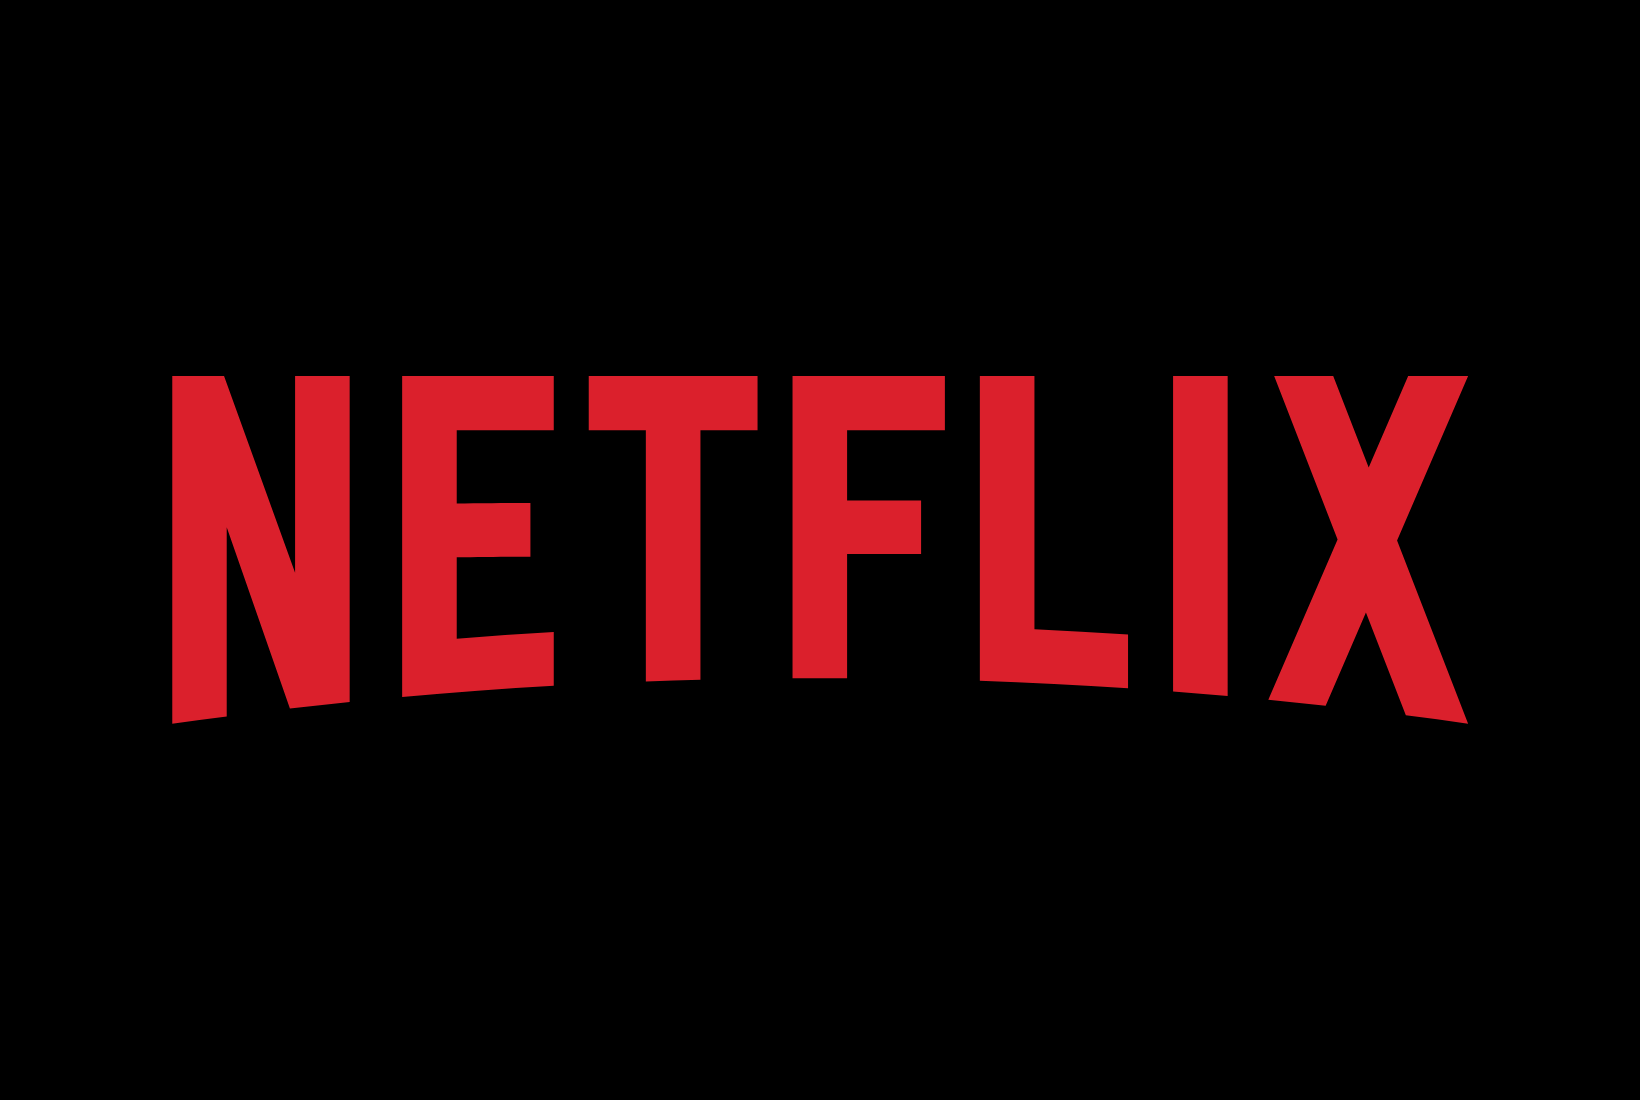 Netflix logo on black background